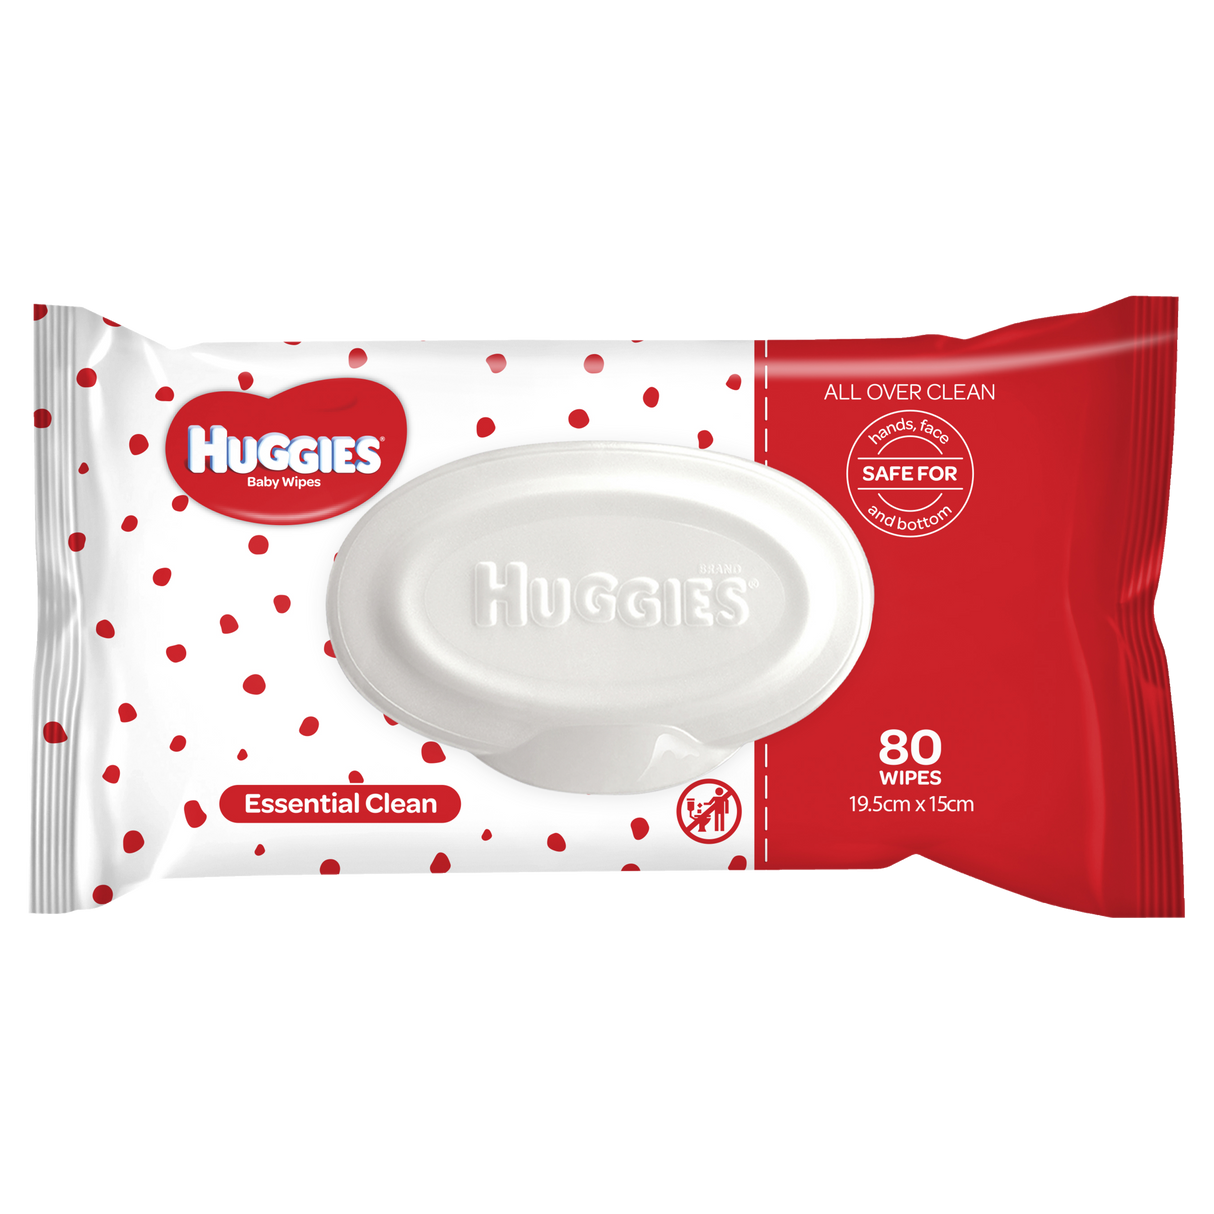 Huggies Essentials Essential Clean Baby Wipes 80 Pack